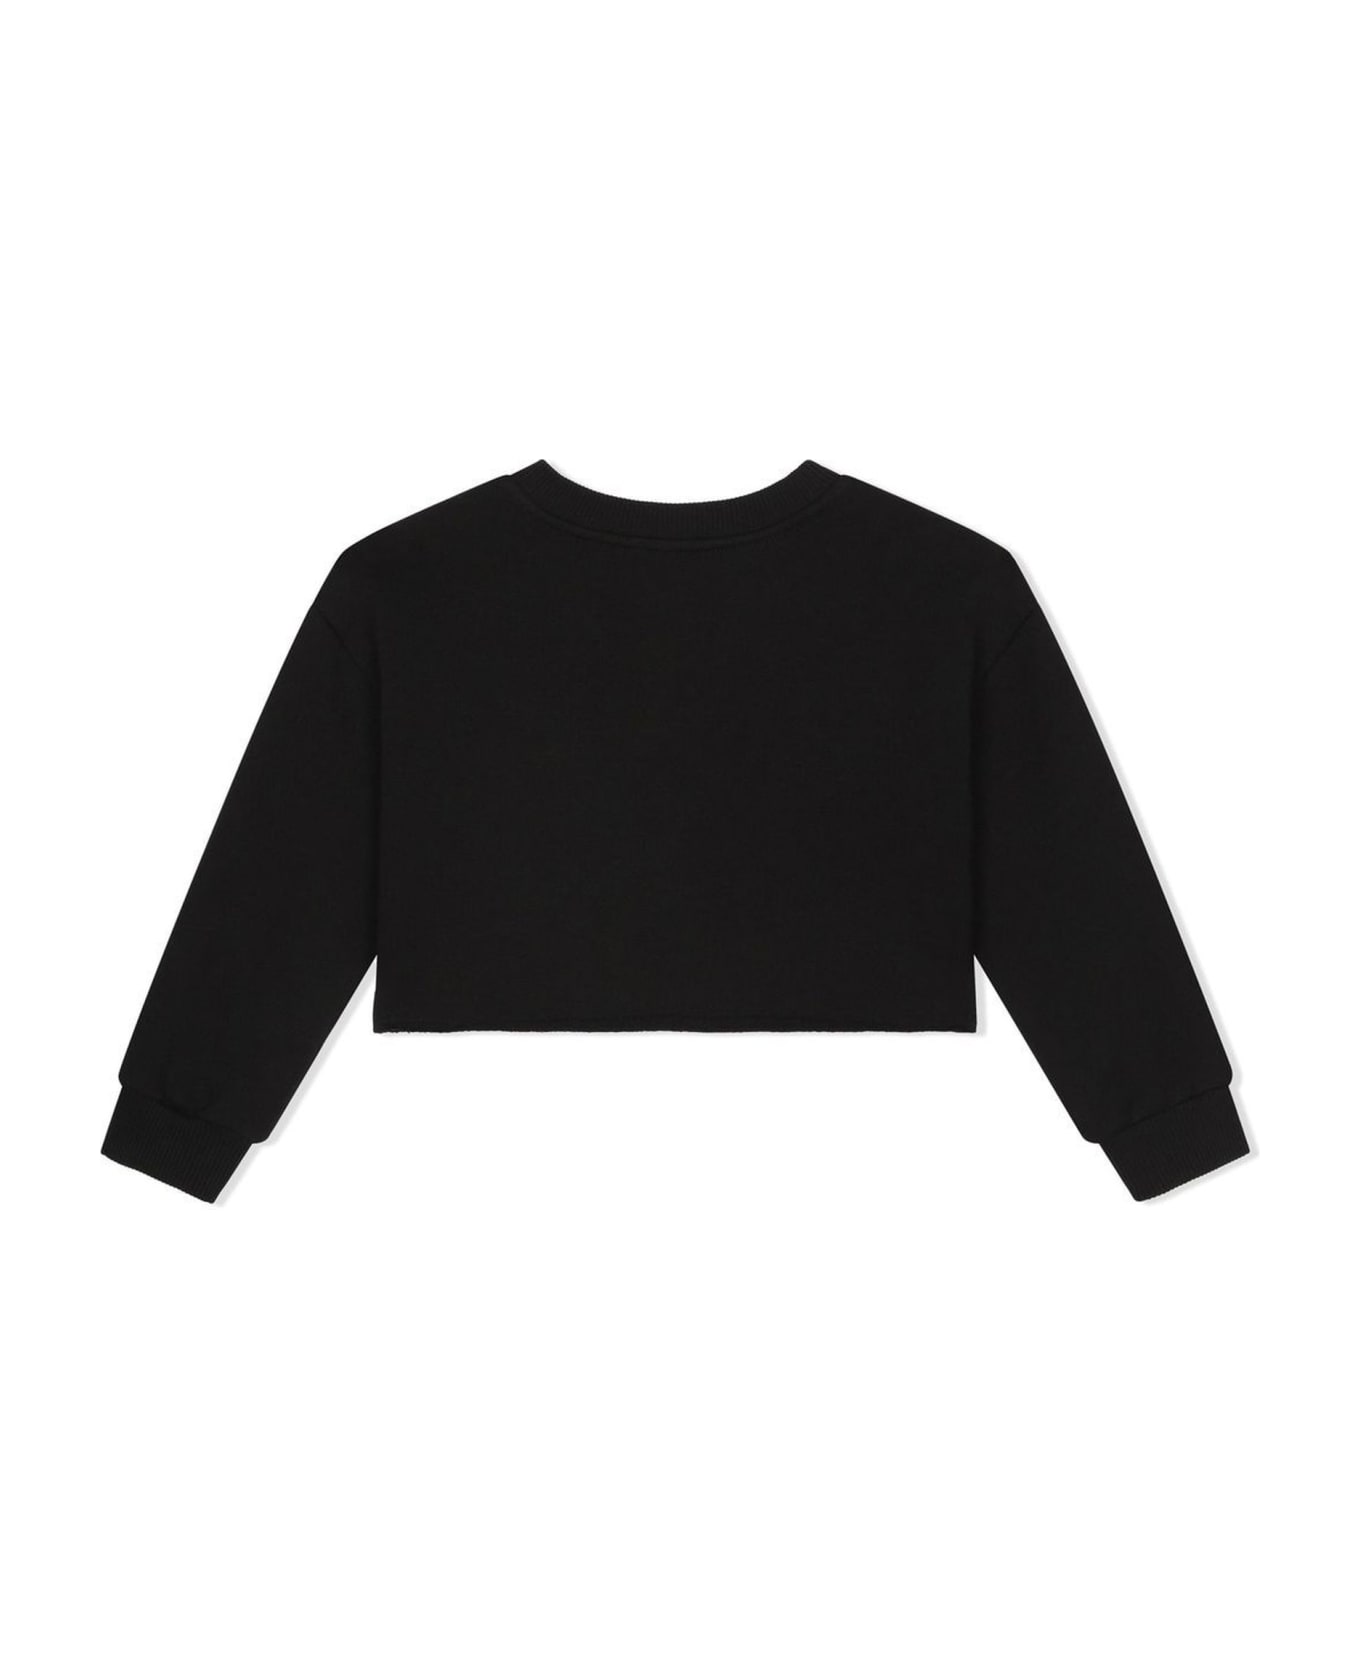 Dolce strapless & Gabbana Black Cotton Sweatshirt - Nero